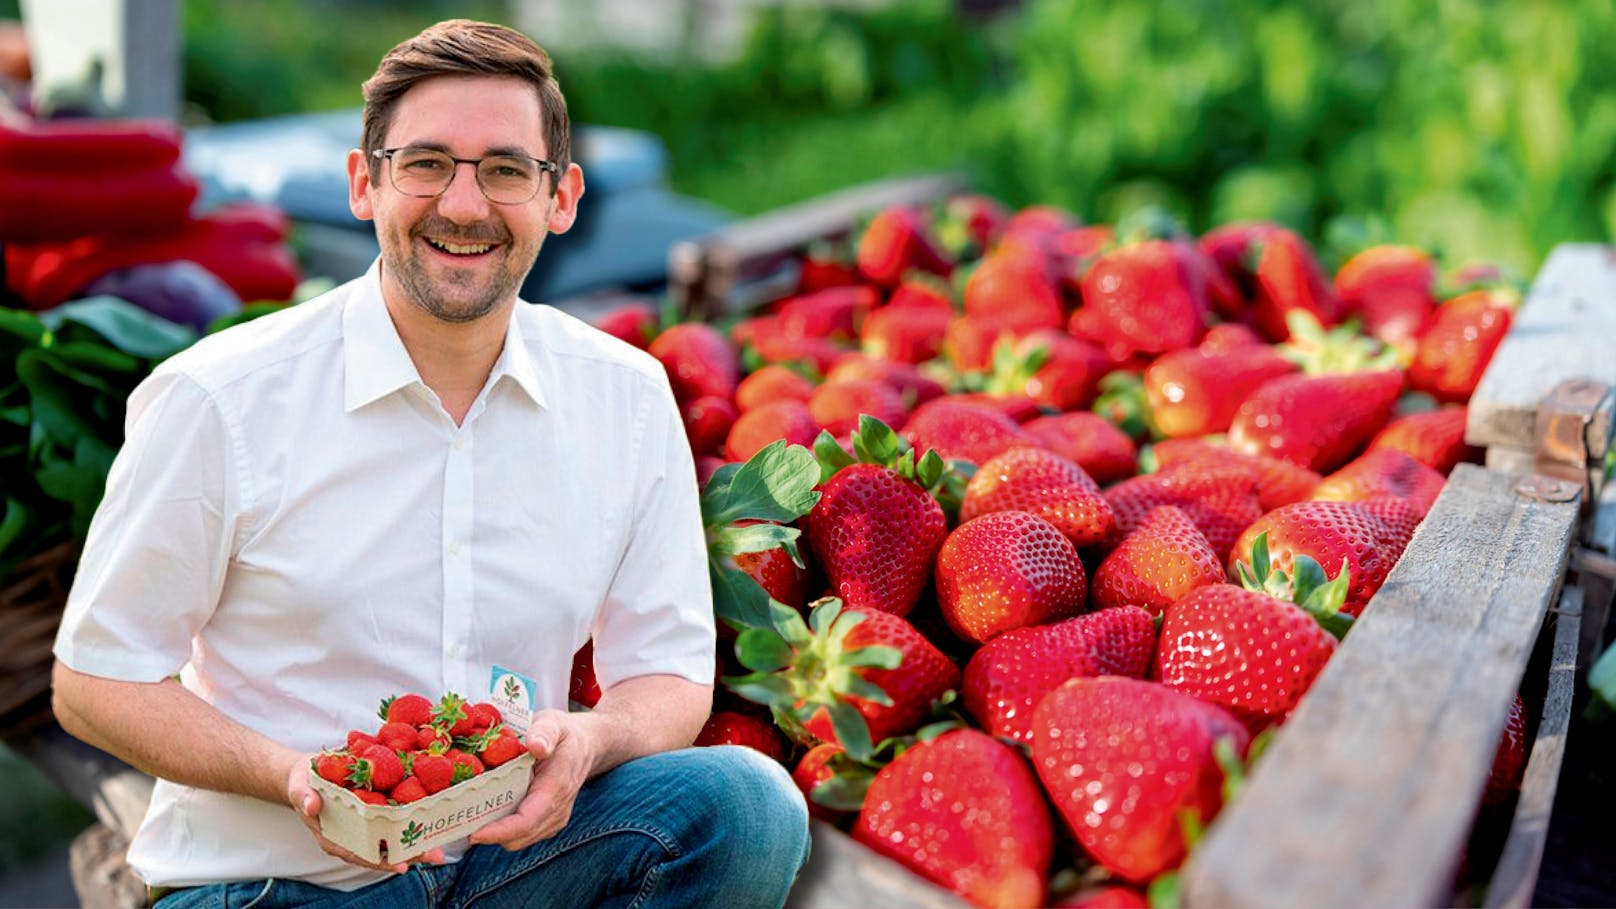 "Werden Preise erhöhen" – Erdbeeren jetzt bald teurer